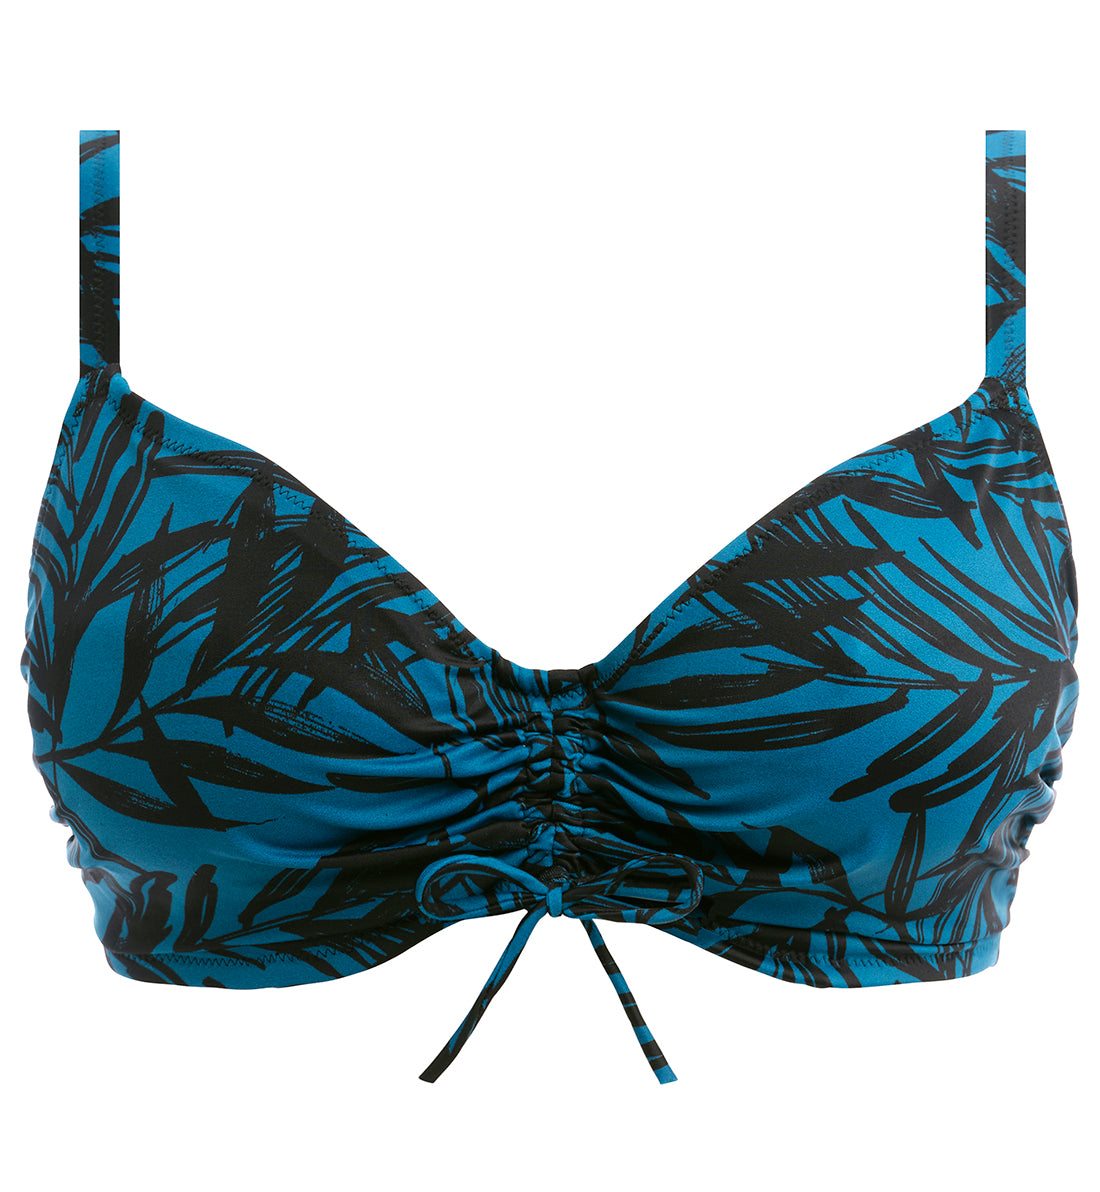 Fantasie Palmetto Bay Concealed Underwire Bralette Bikini Top (502014),30F,Zen Blue - Zen Blue,30F